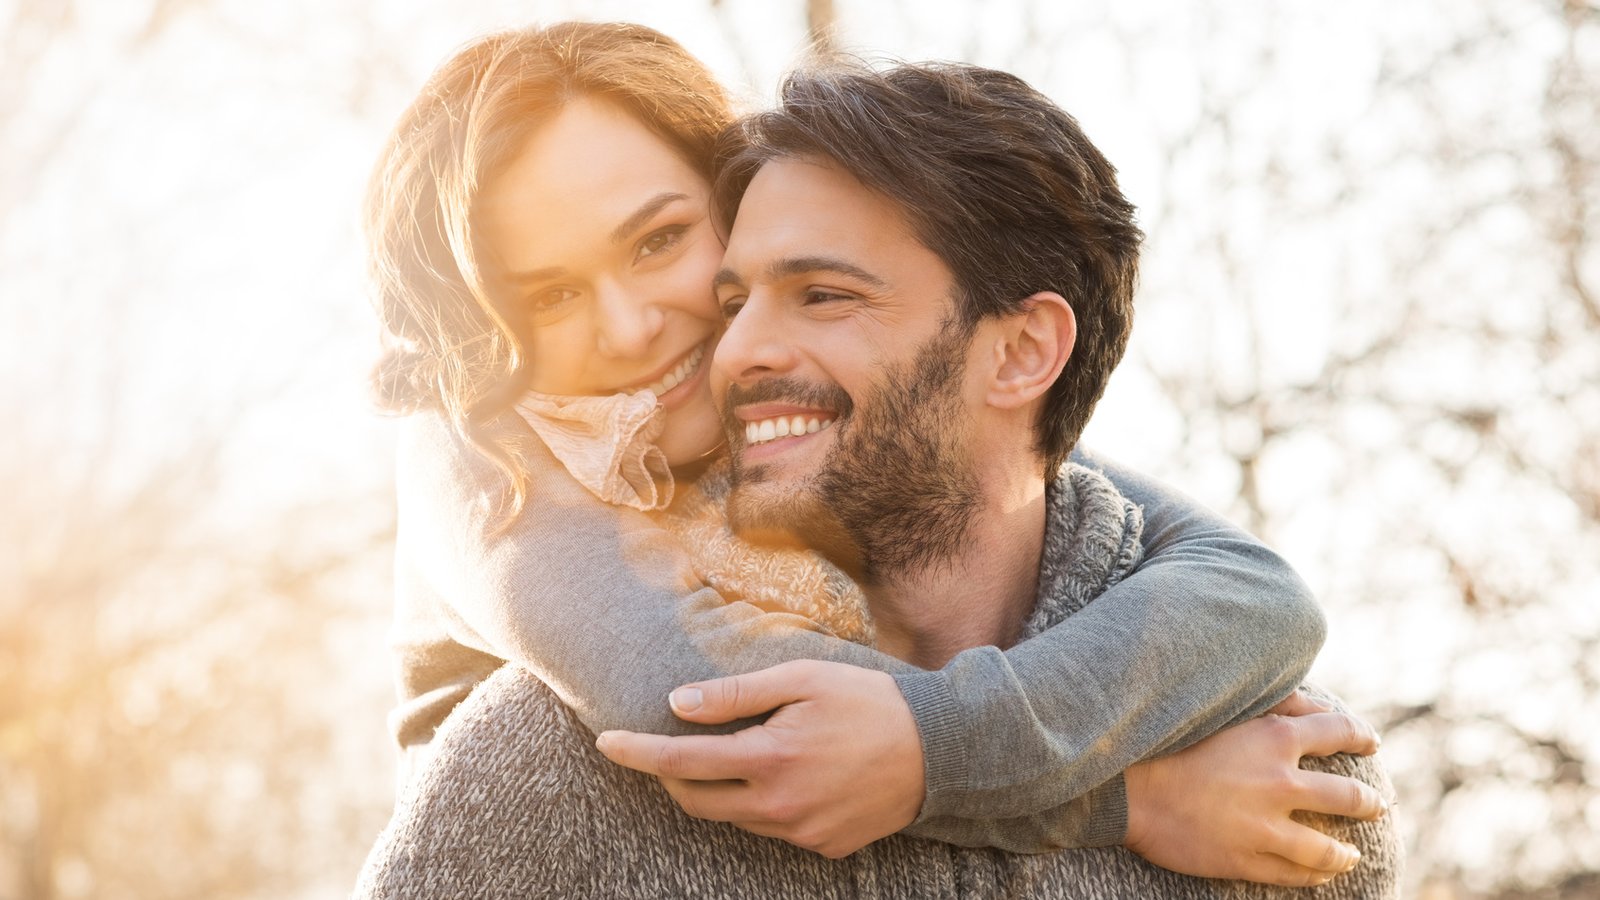 Être heureux en couple fait grossir, selon les scientifiques!